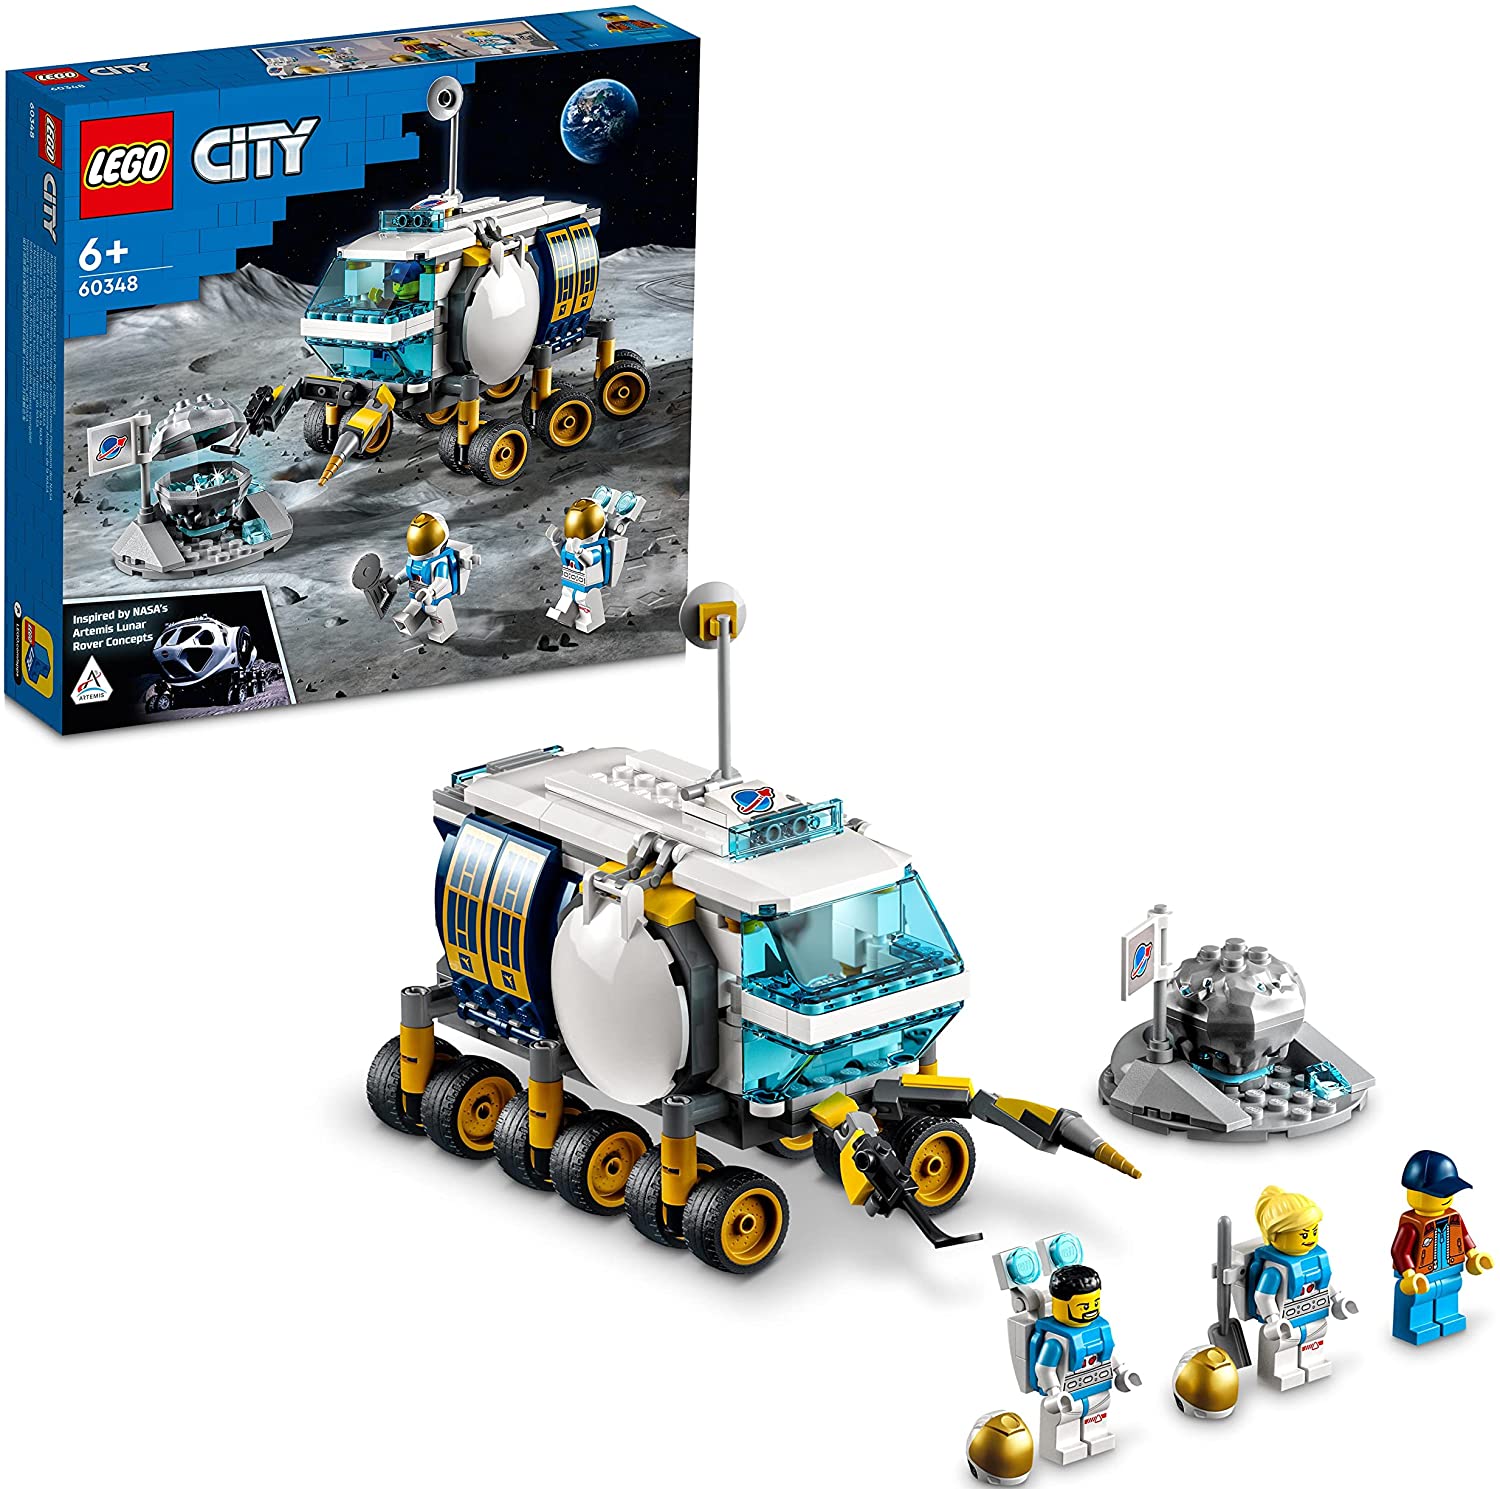 LEGO 樂高城市系列月面探測車60348